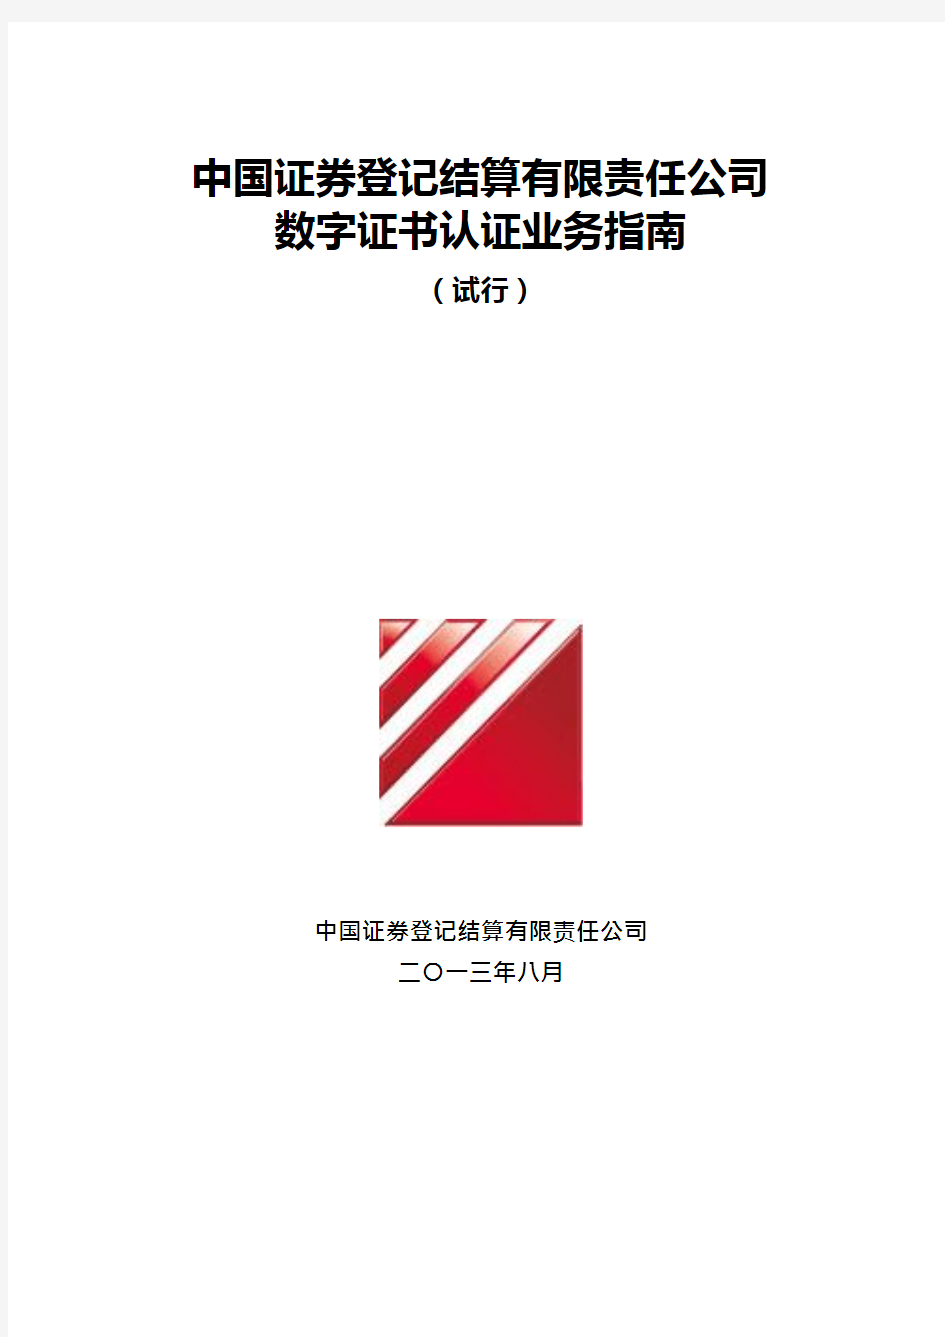 中国证券登记结算有限责任公司数字证书认证业务指南(试行)_2018091119031818